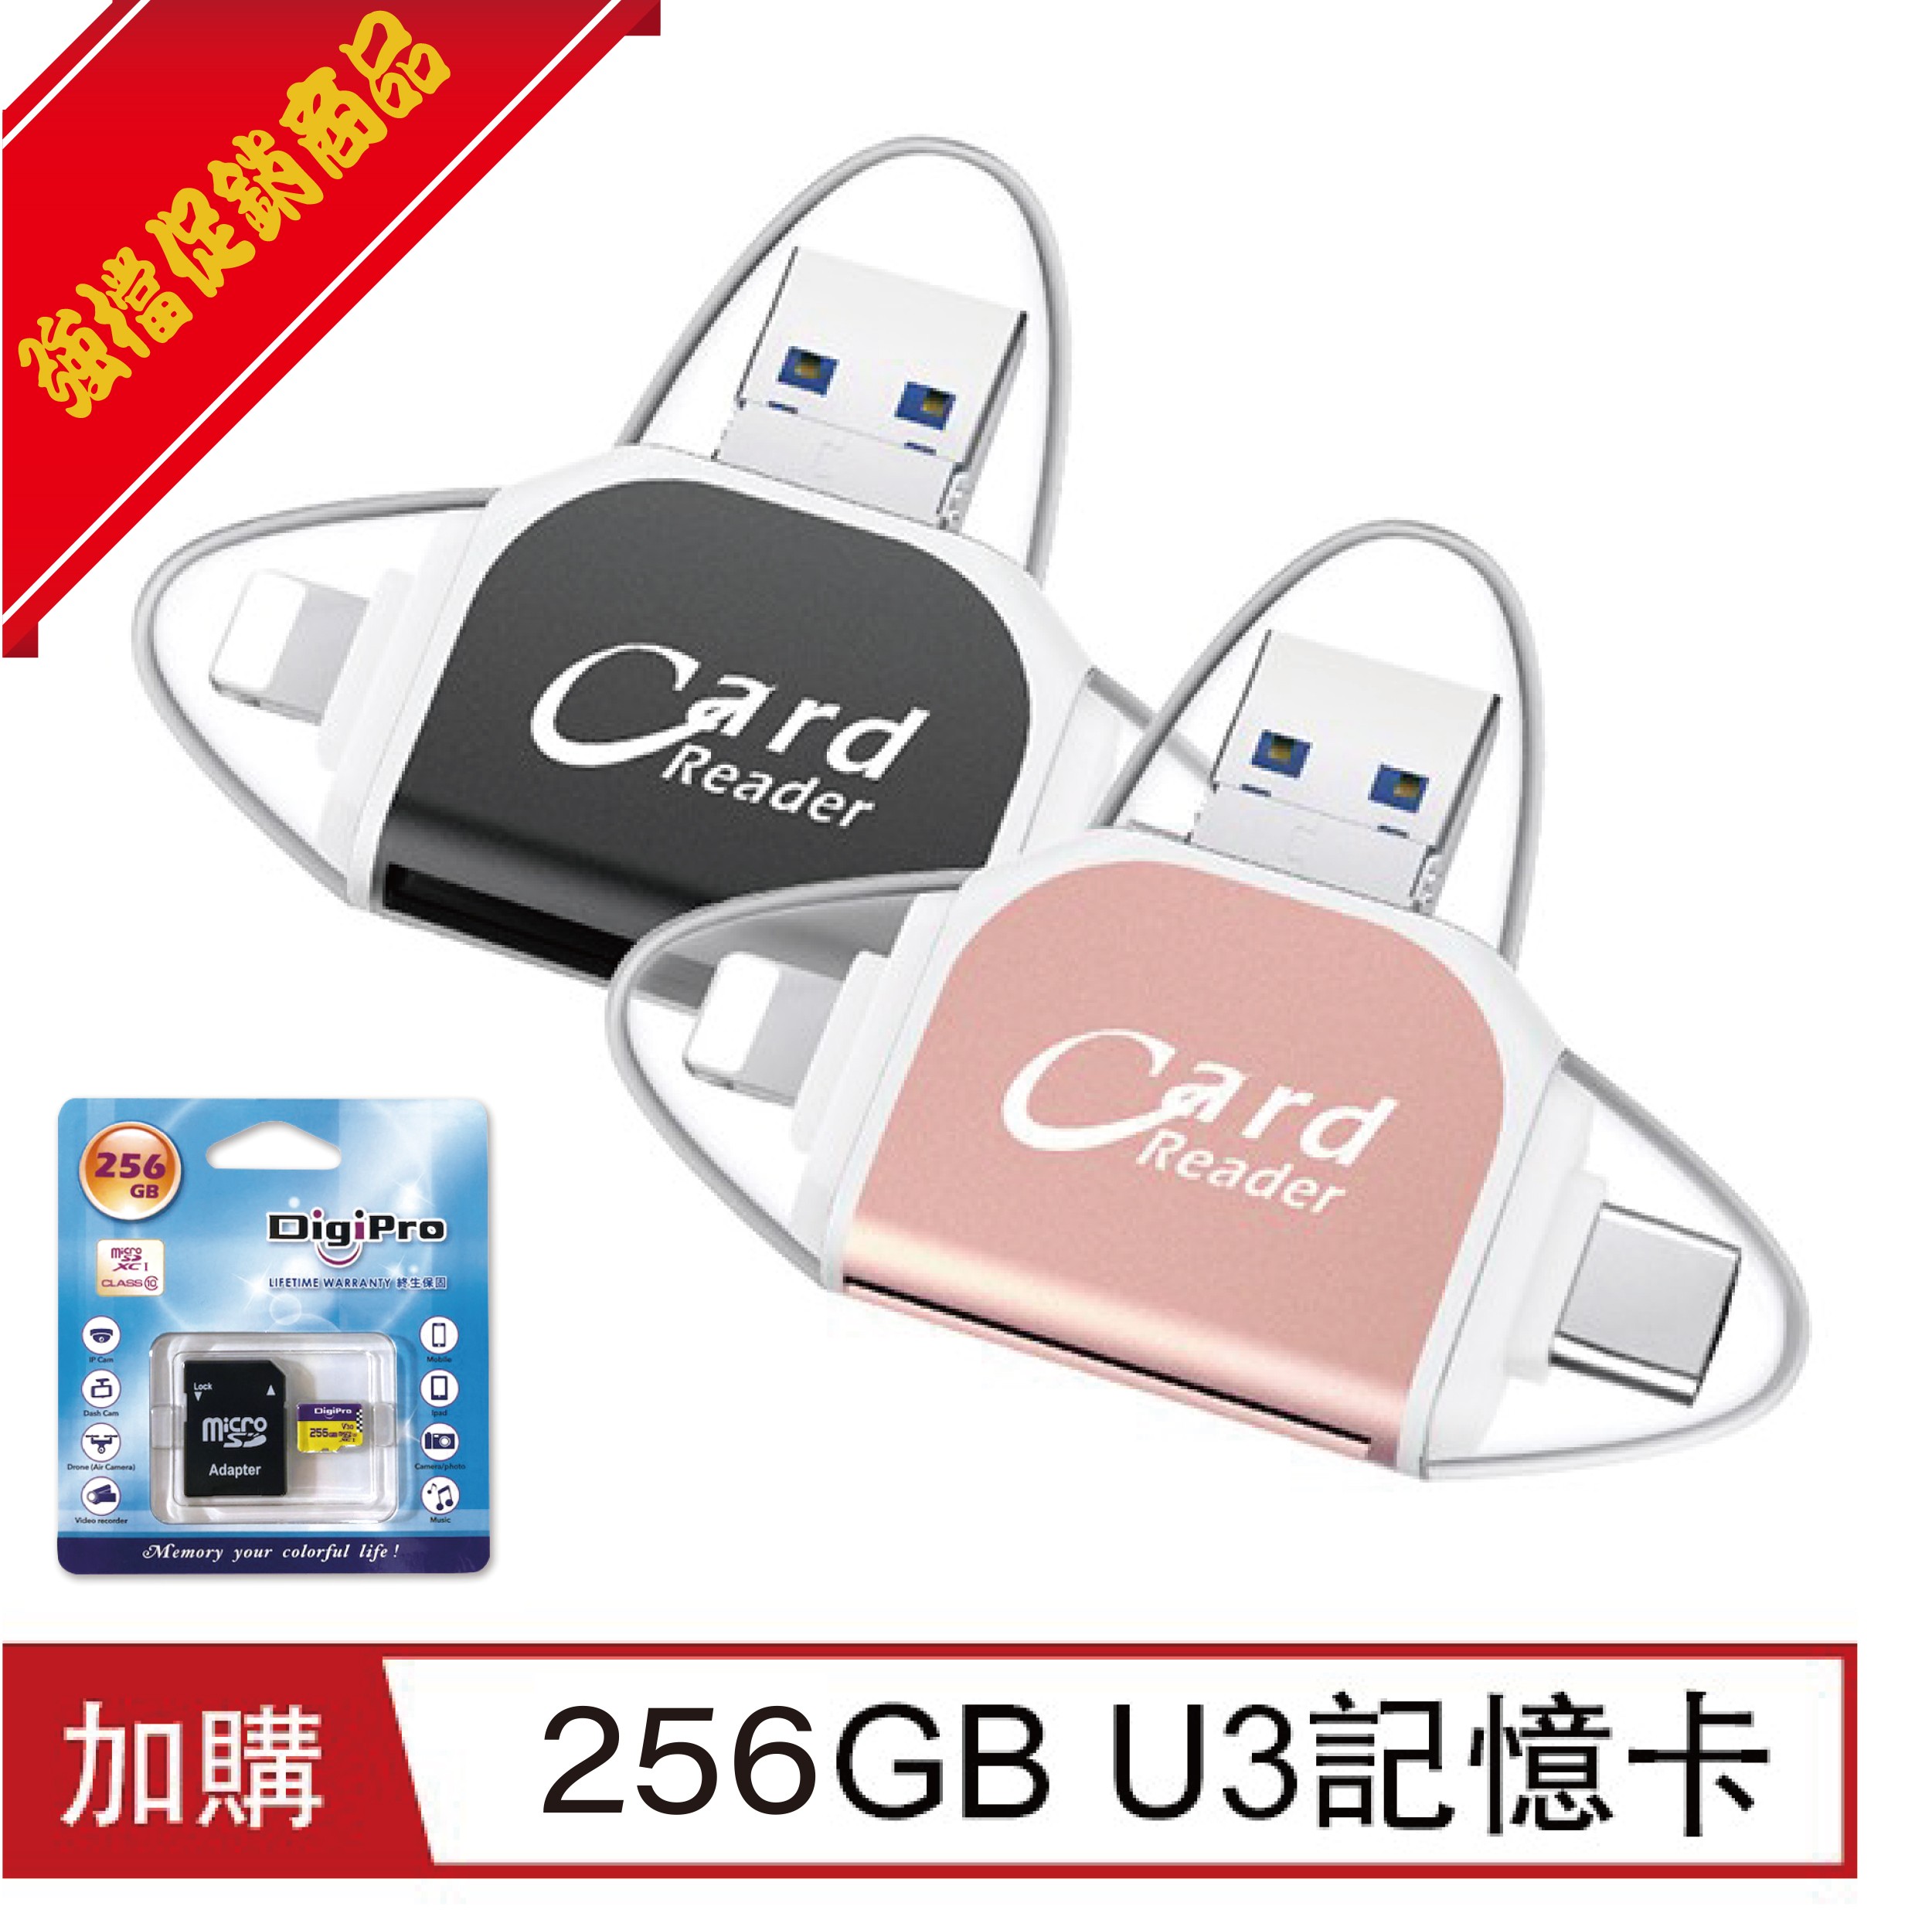 四合一多功能OTG/USB讀卡器 (加購256GB記憶卡)